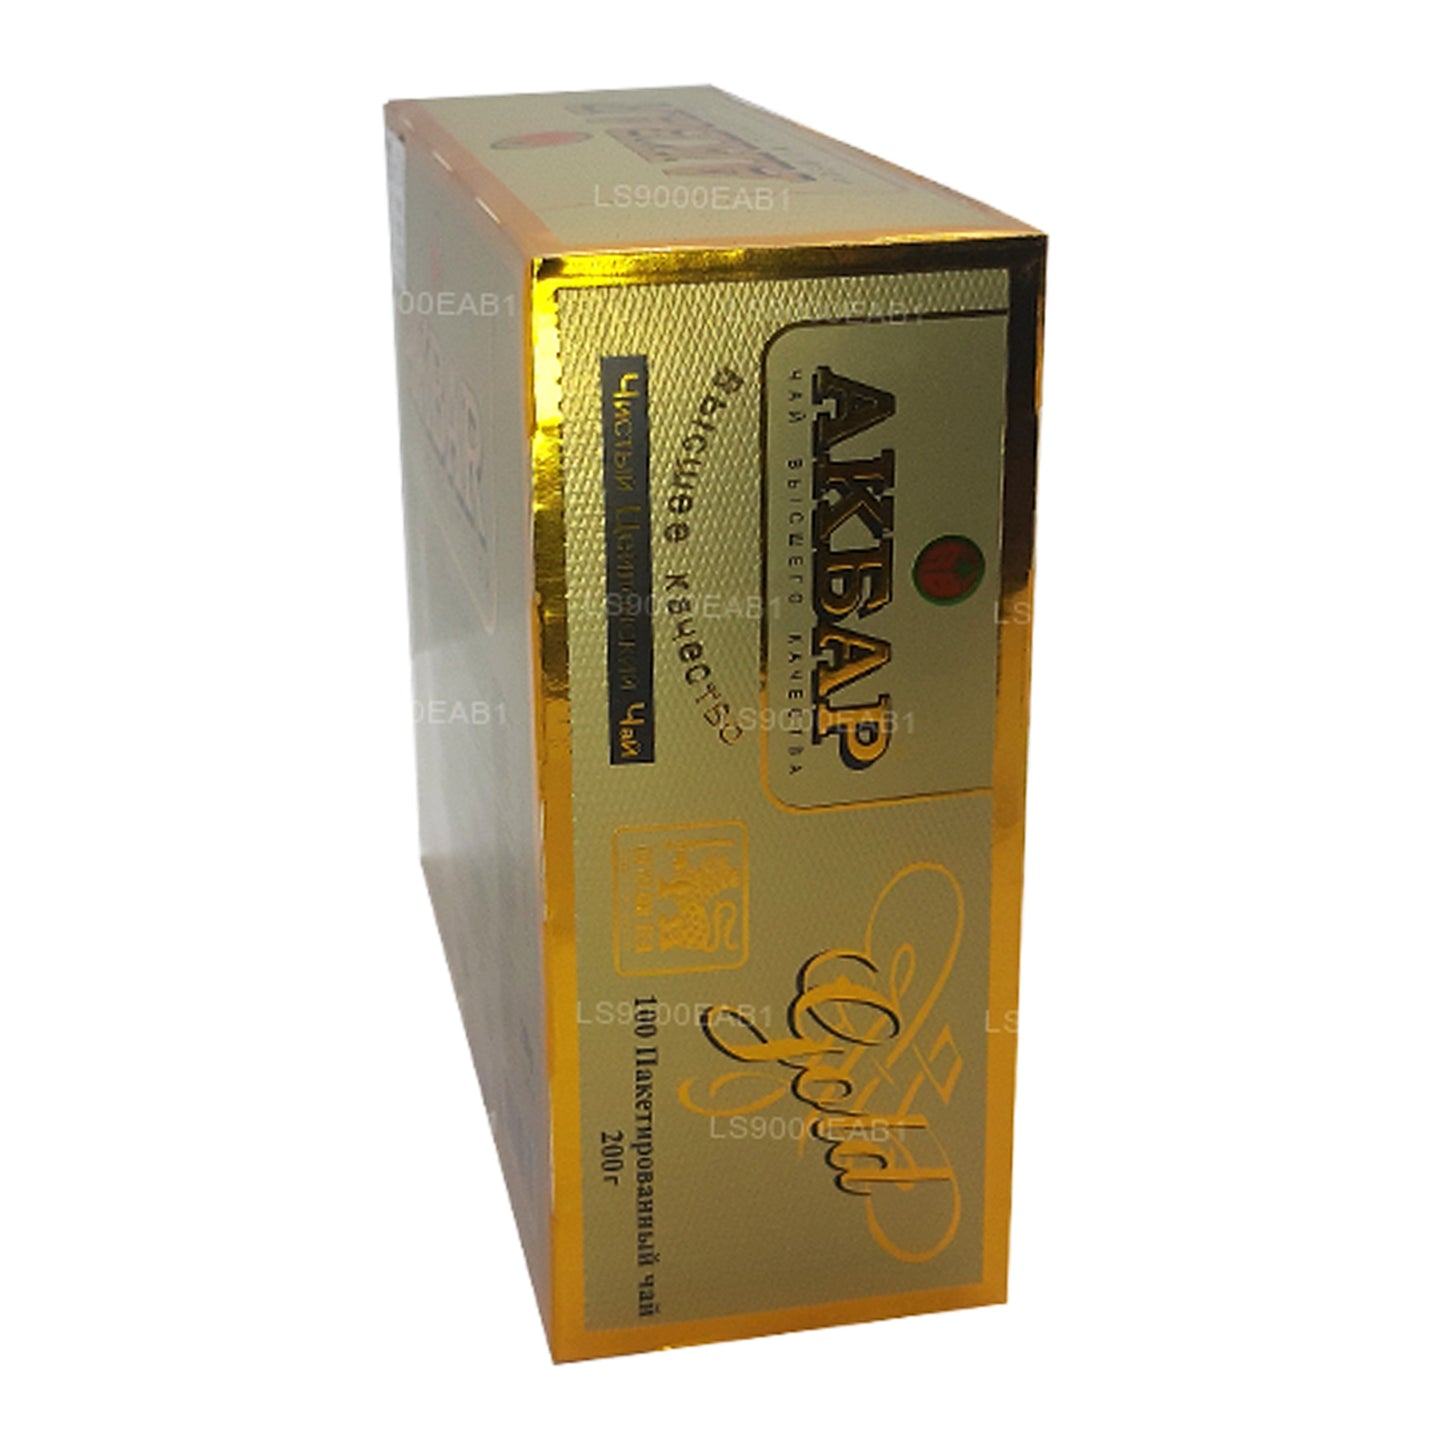 Akbar Gold Premium 100% Pure Ceylon Tea (200g) 100 Tea Bags